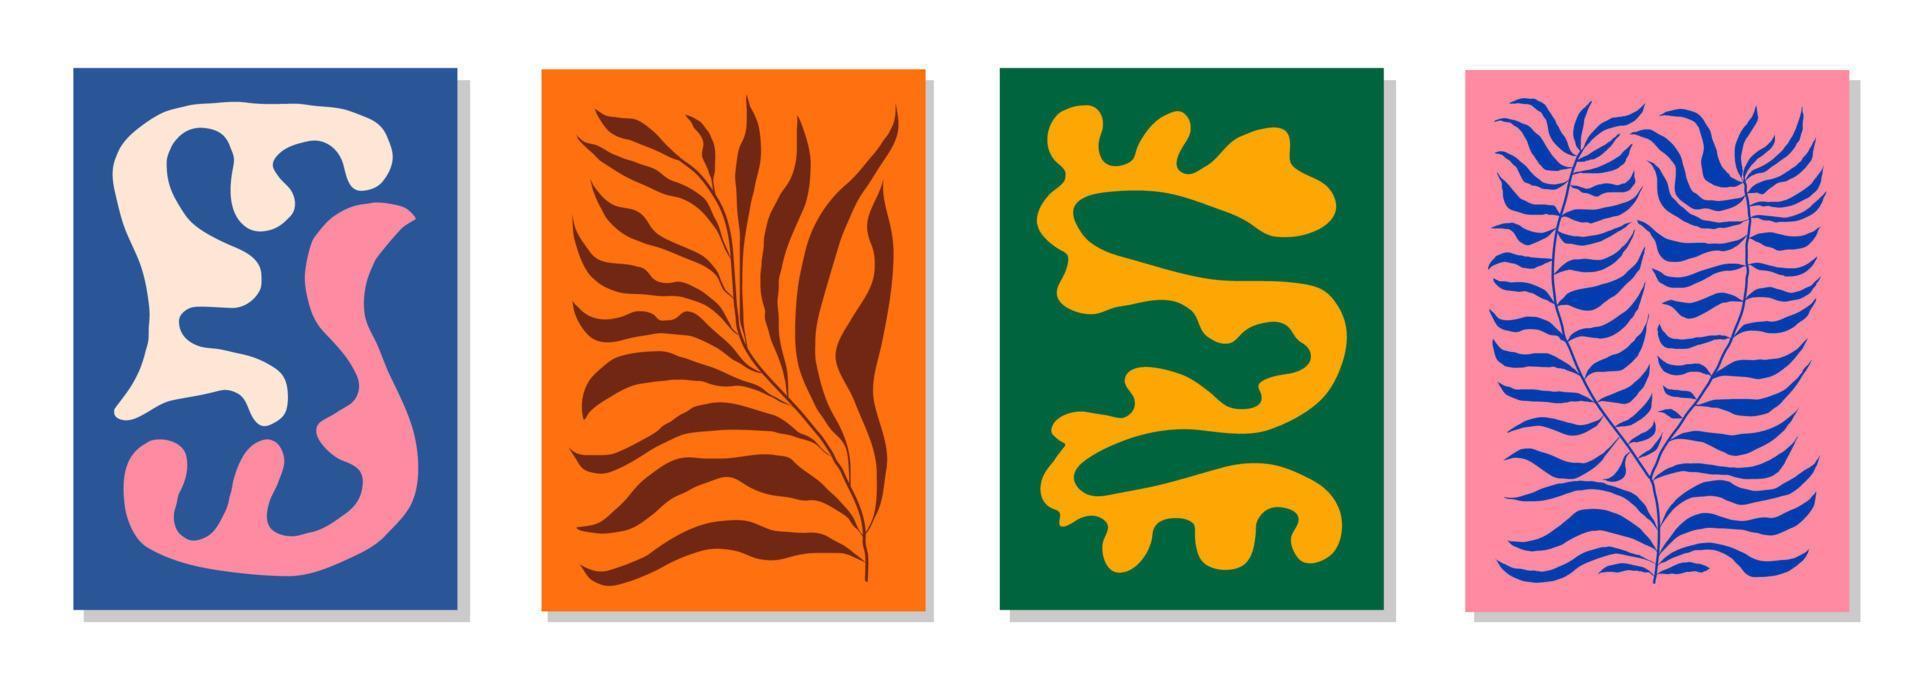 Set aus 4 von Matisse inspirierten Wandkunstpostern, Broschüren, Flyervorlagen, zeitgenössischen Collagen. organische Linie abstraktes Muster, handgezeichnetes Design, einfache Tapete. dynamische Formen grafischer Vintage-Vektor vektor